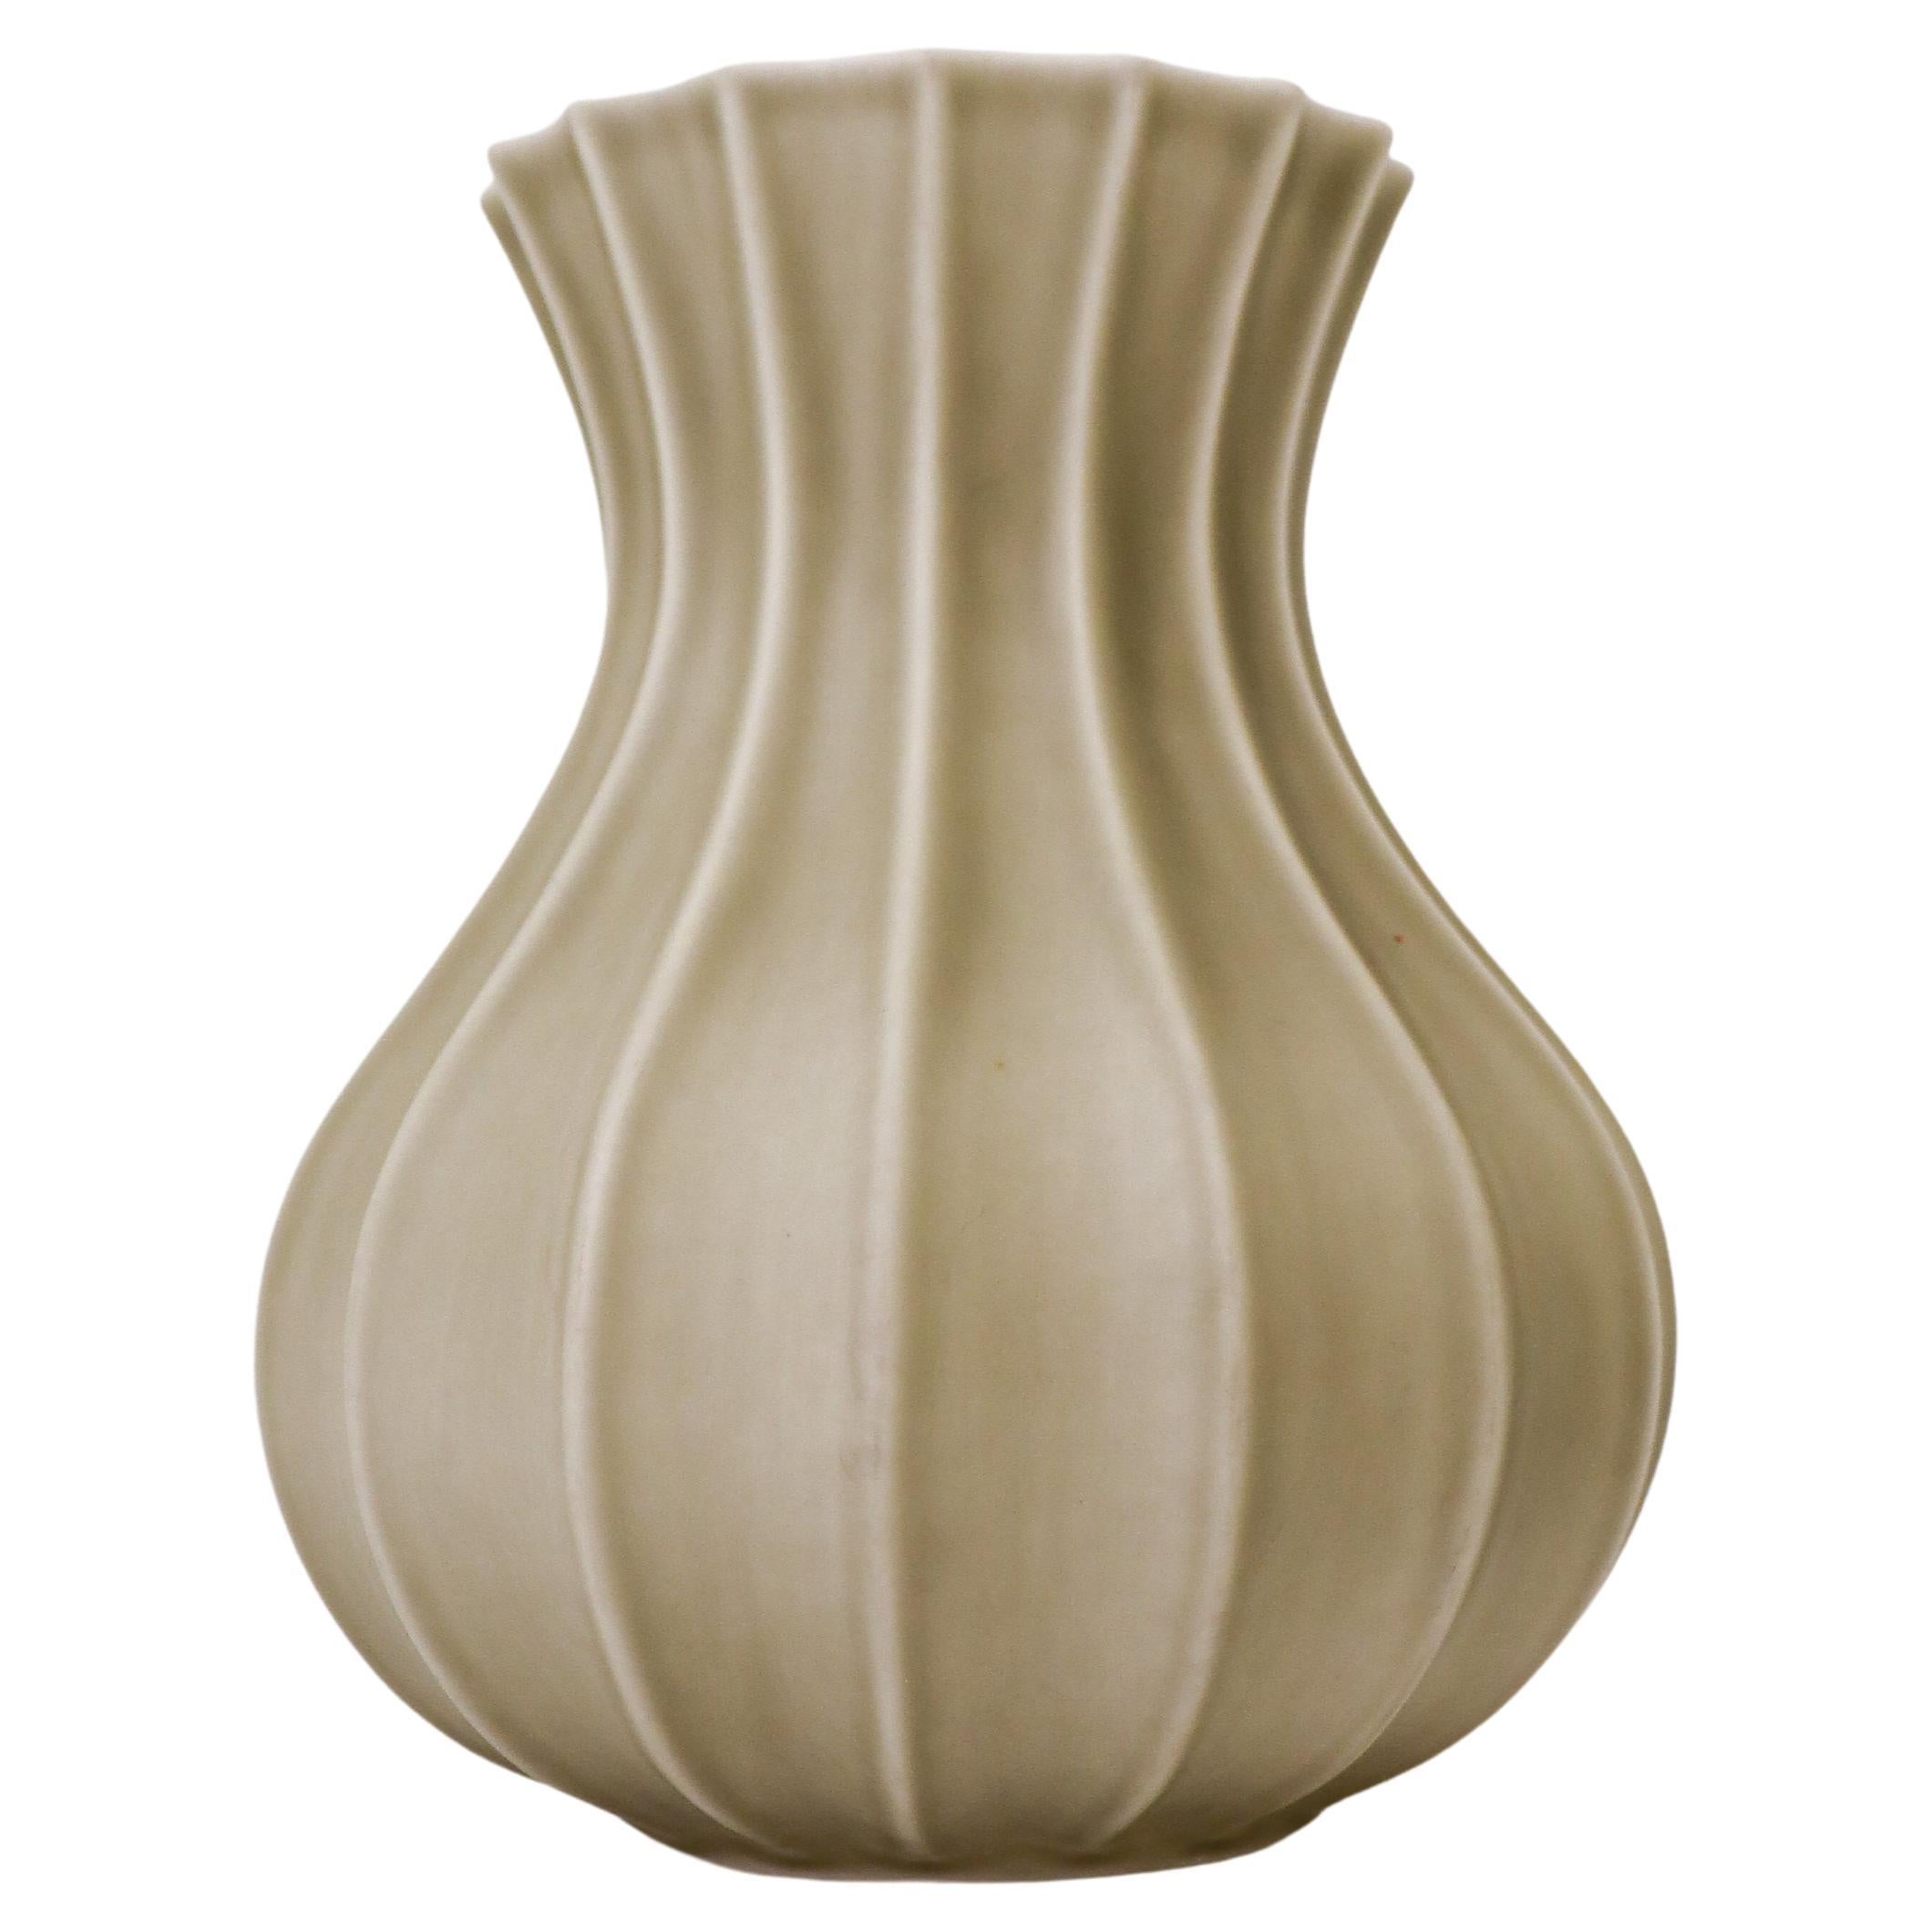 Olive Green / Grey Ceramic Vase, Pia Rönndahl Rörstrand, Scandinavian Modern